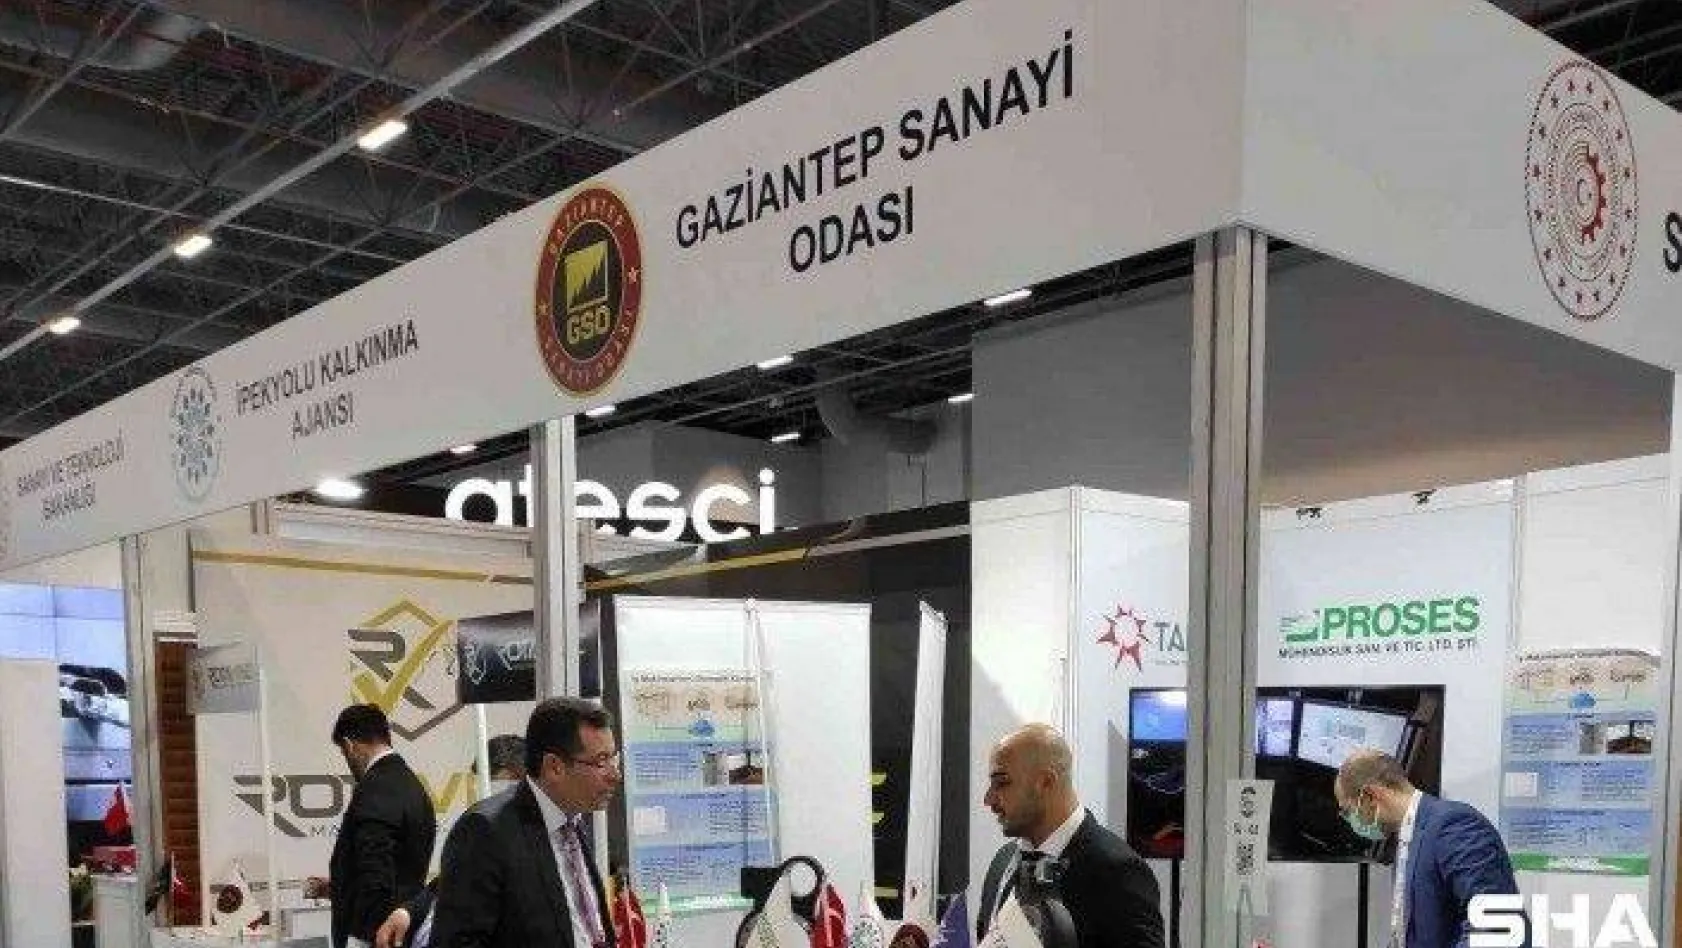 Gaziantep'in savunma sanayii yatırımları artıyor